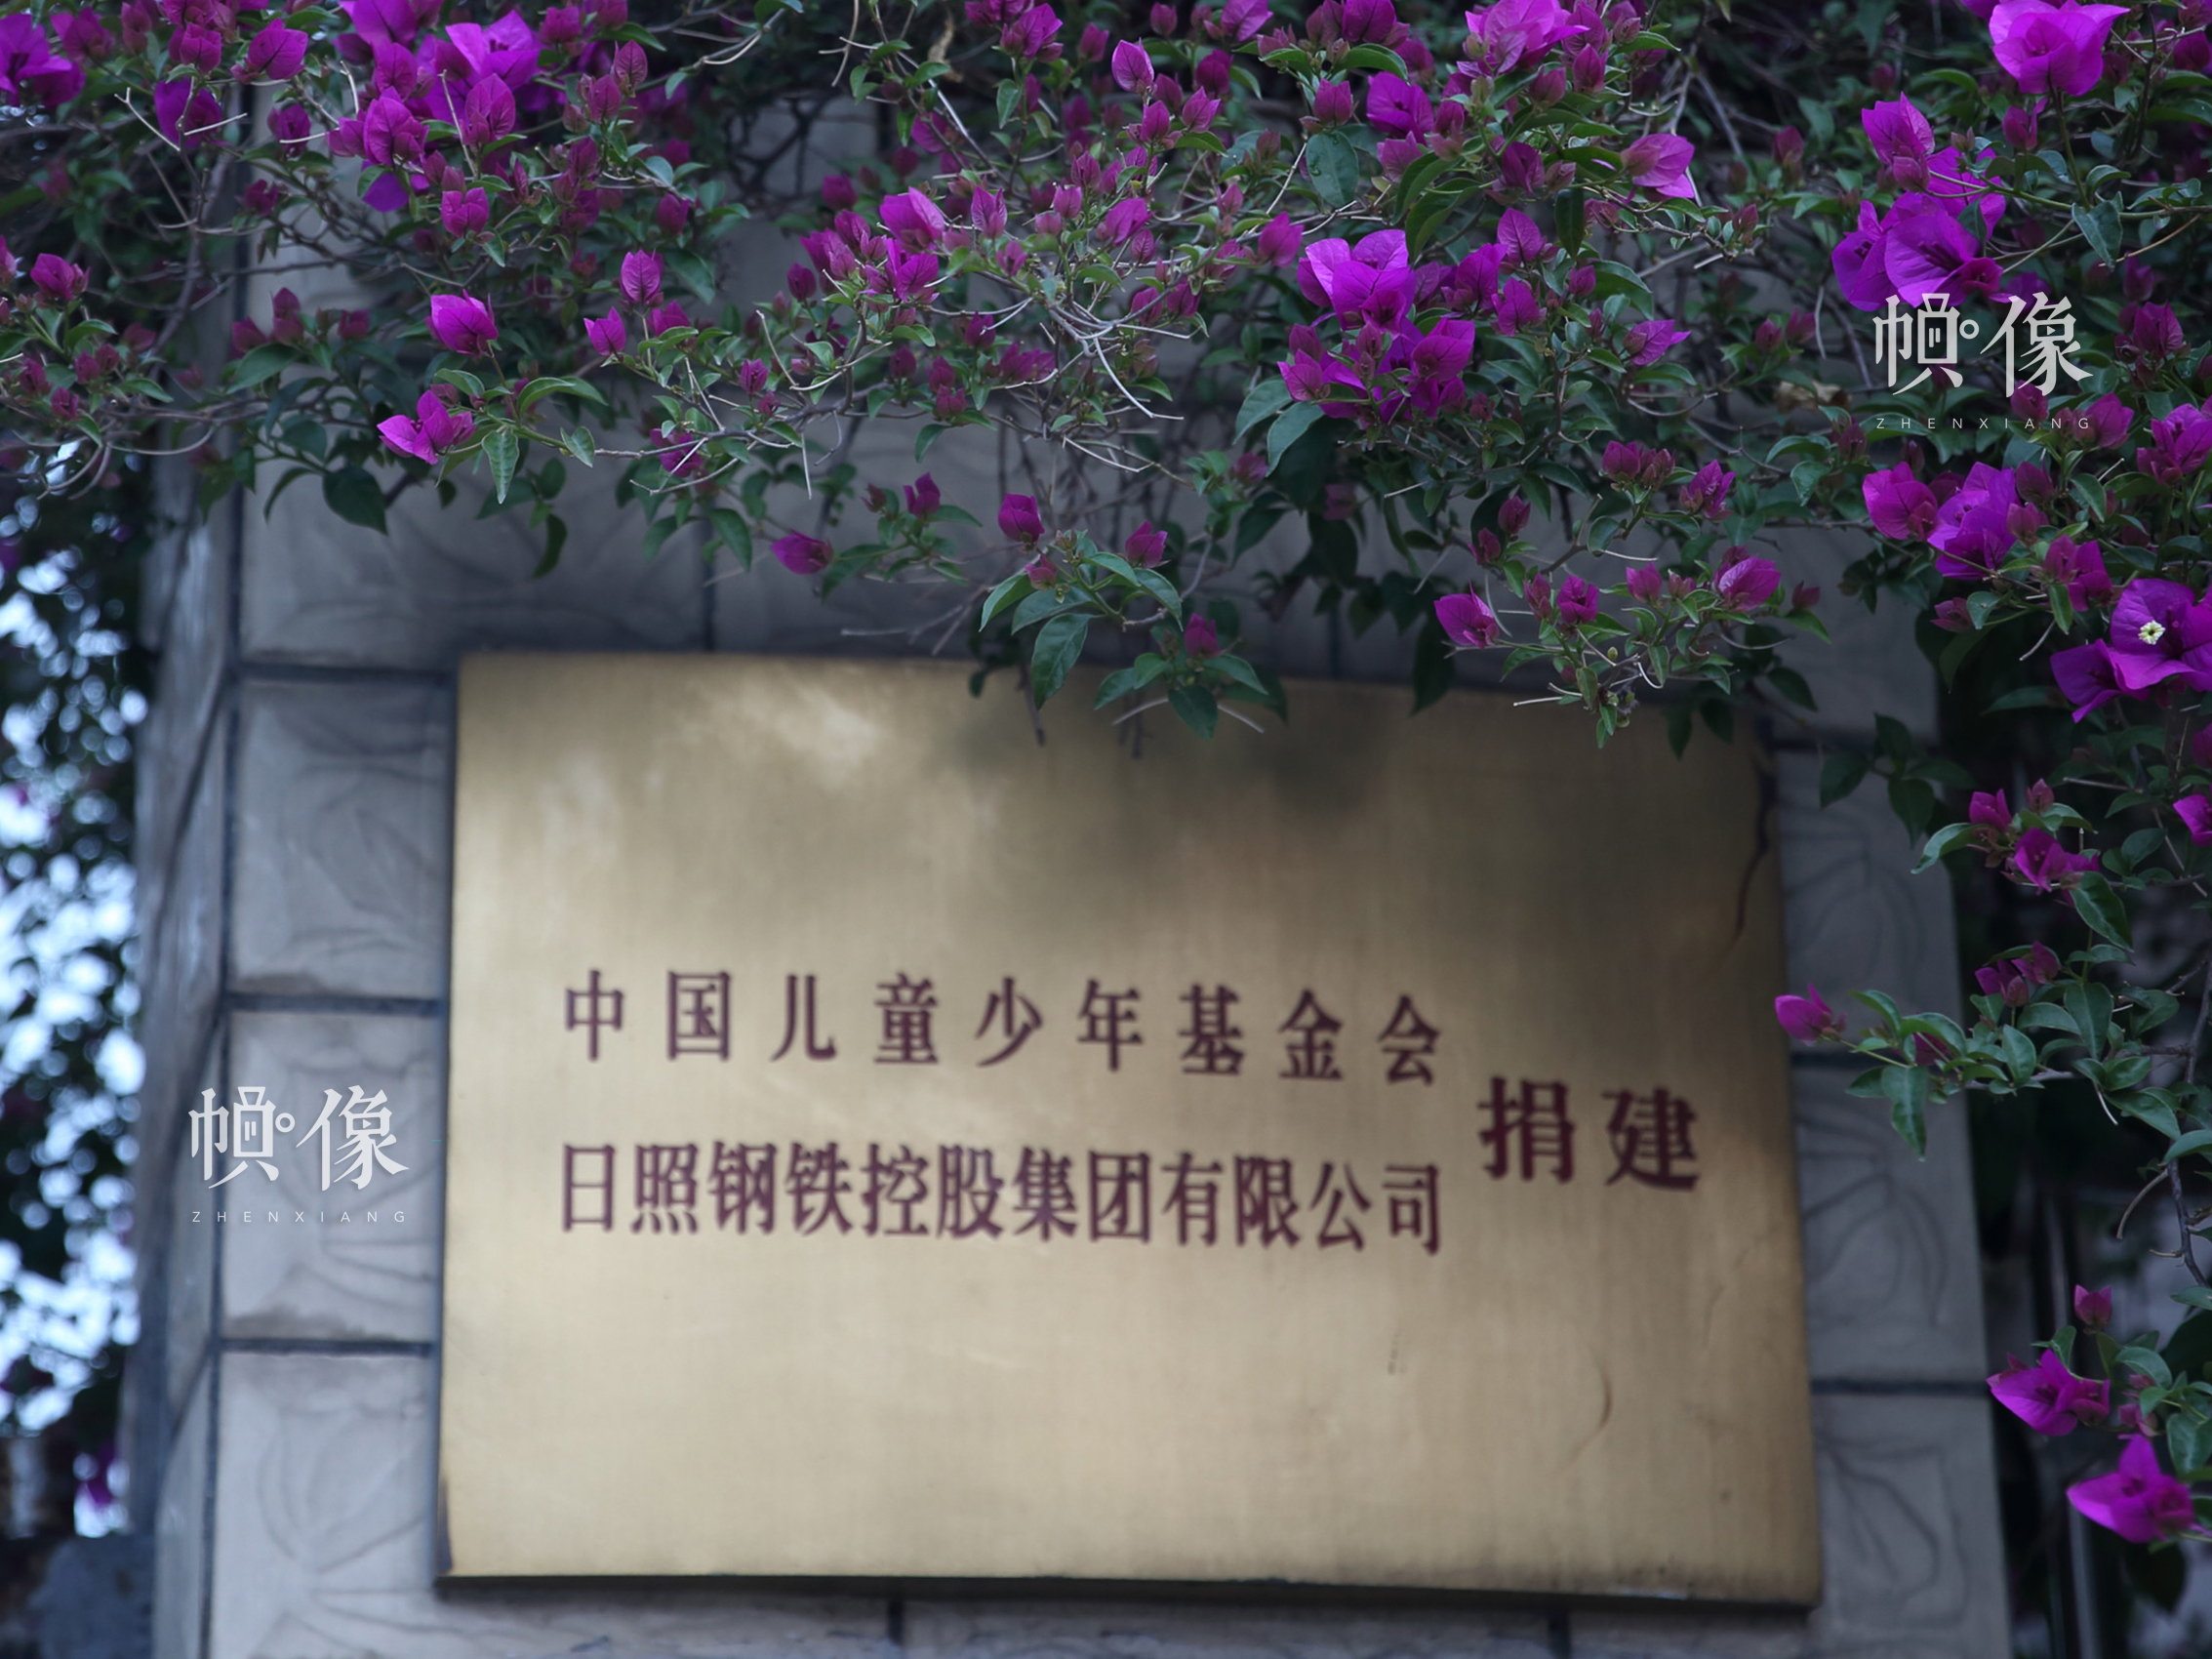 安康家園由中國兒童少年基金會和日照鋼鐵集團共同發起設立。安康家園的孩子，都是5.12汶川特大地震孤困兒童。712名孩子在北京、日照的安康家園生活了一年，有一部分後來又陸陸續續找到了父母，最終672名孩子于2009年8月回到成都雙流的安康家園。中國網記者 陳維松 攝